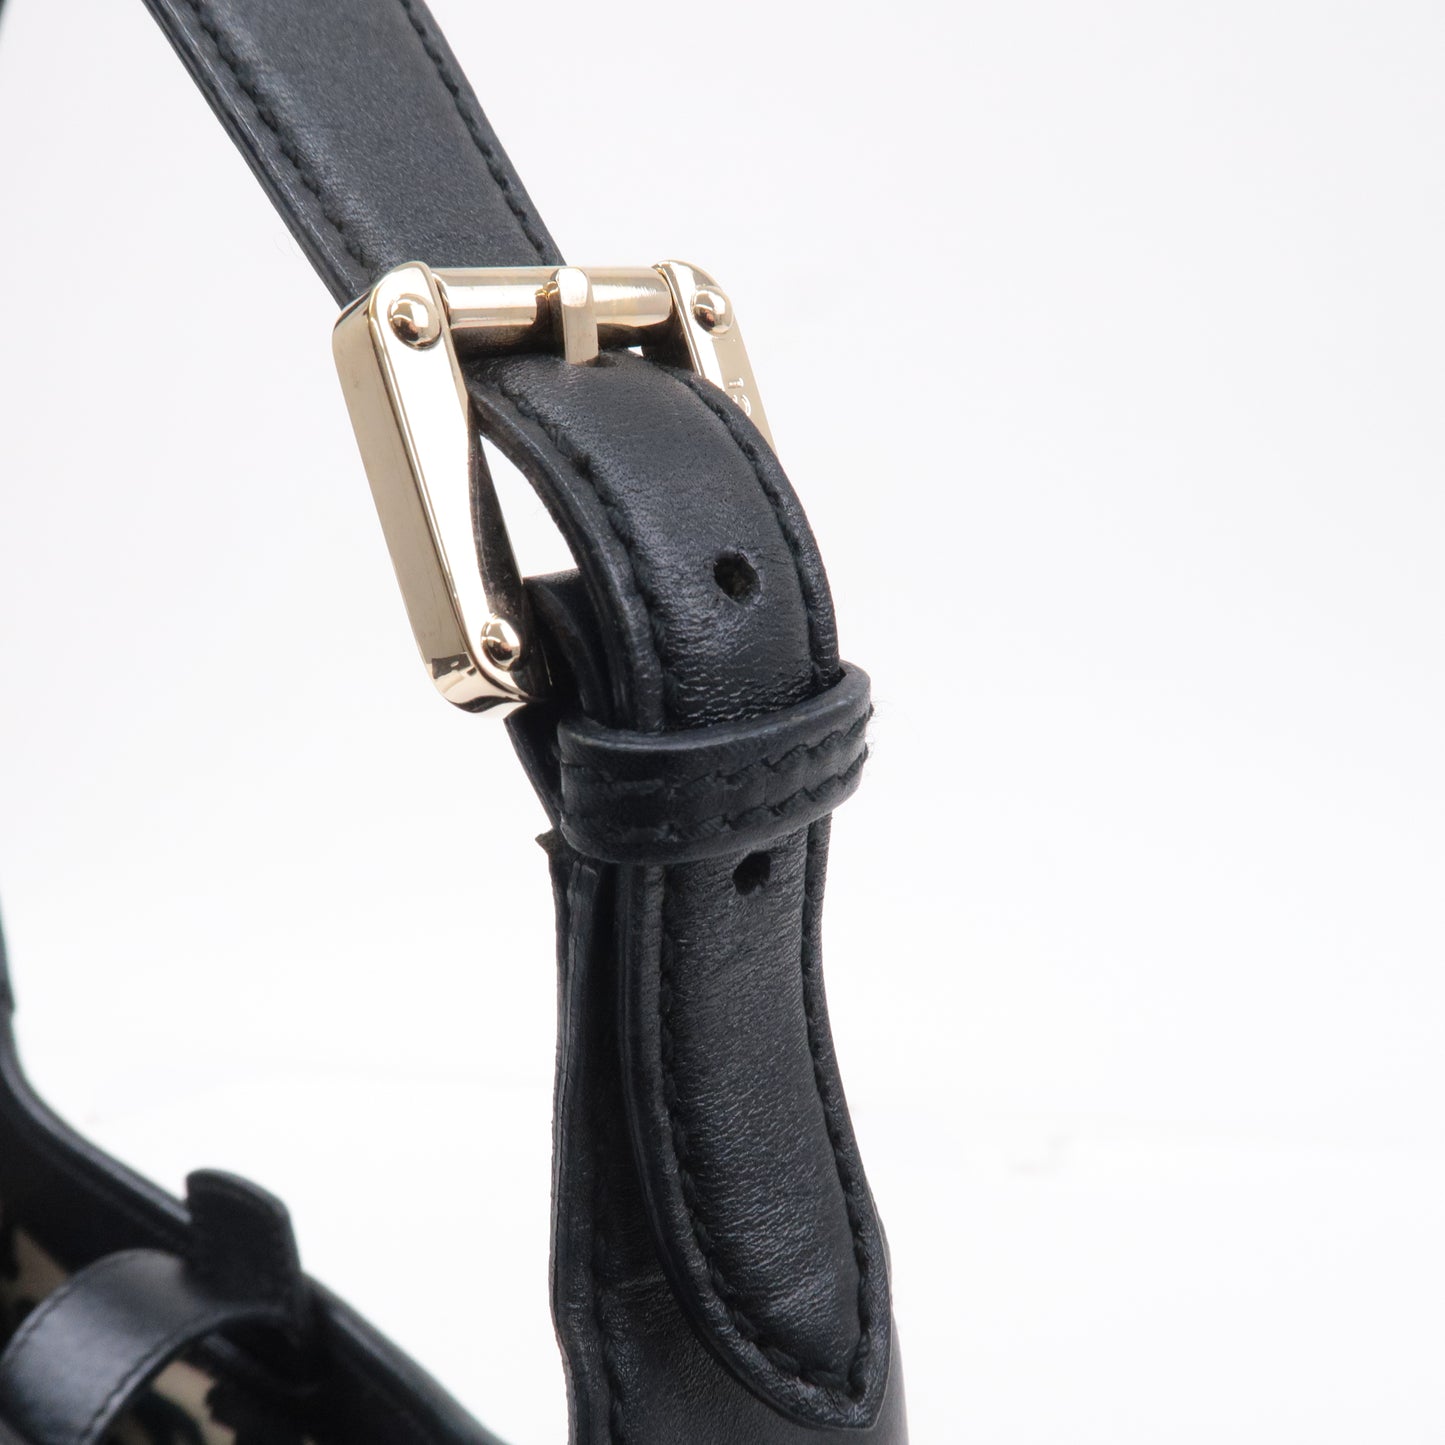 GUCCI Guccissima Leather Shoulder Bag Hand Bag Black 145778